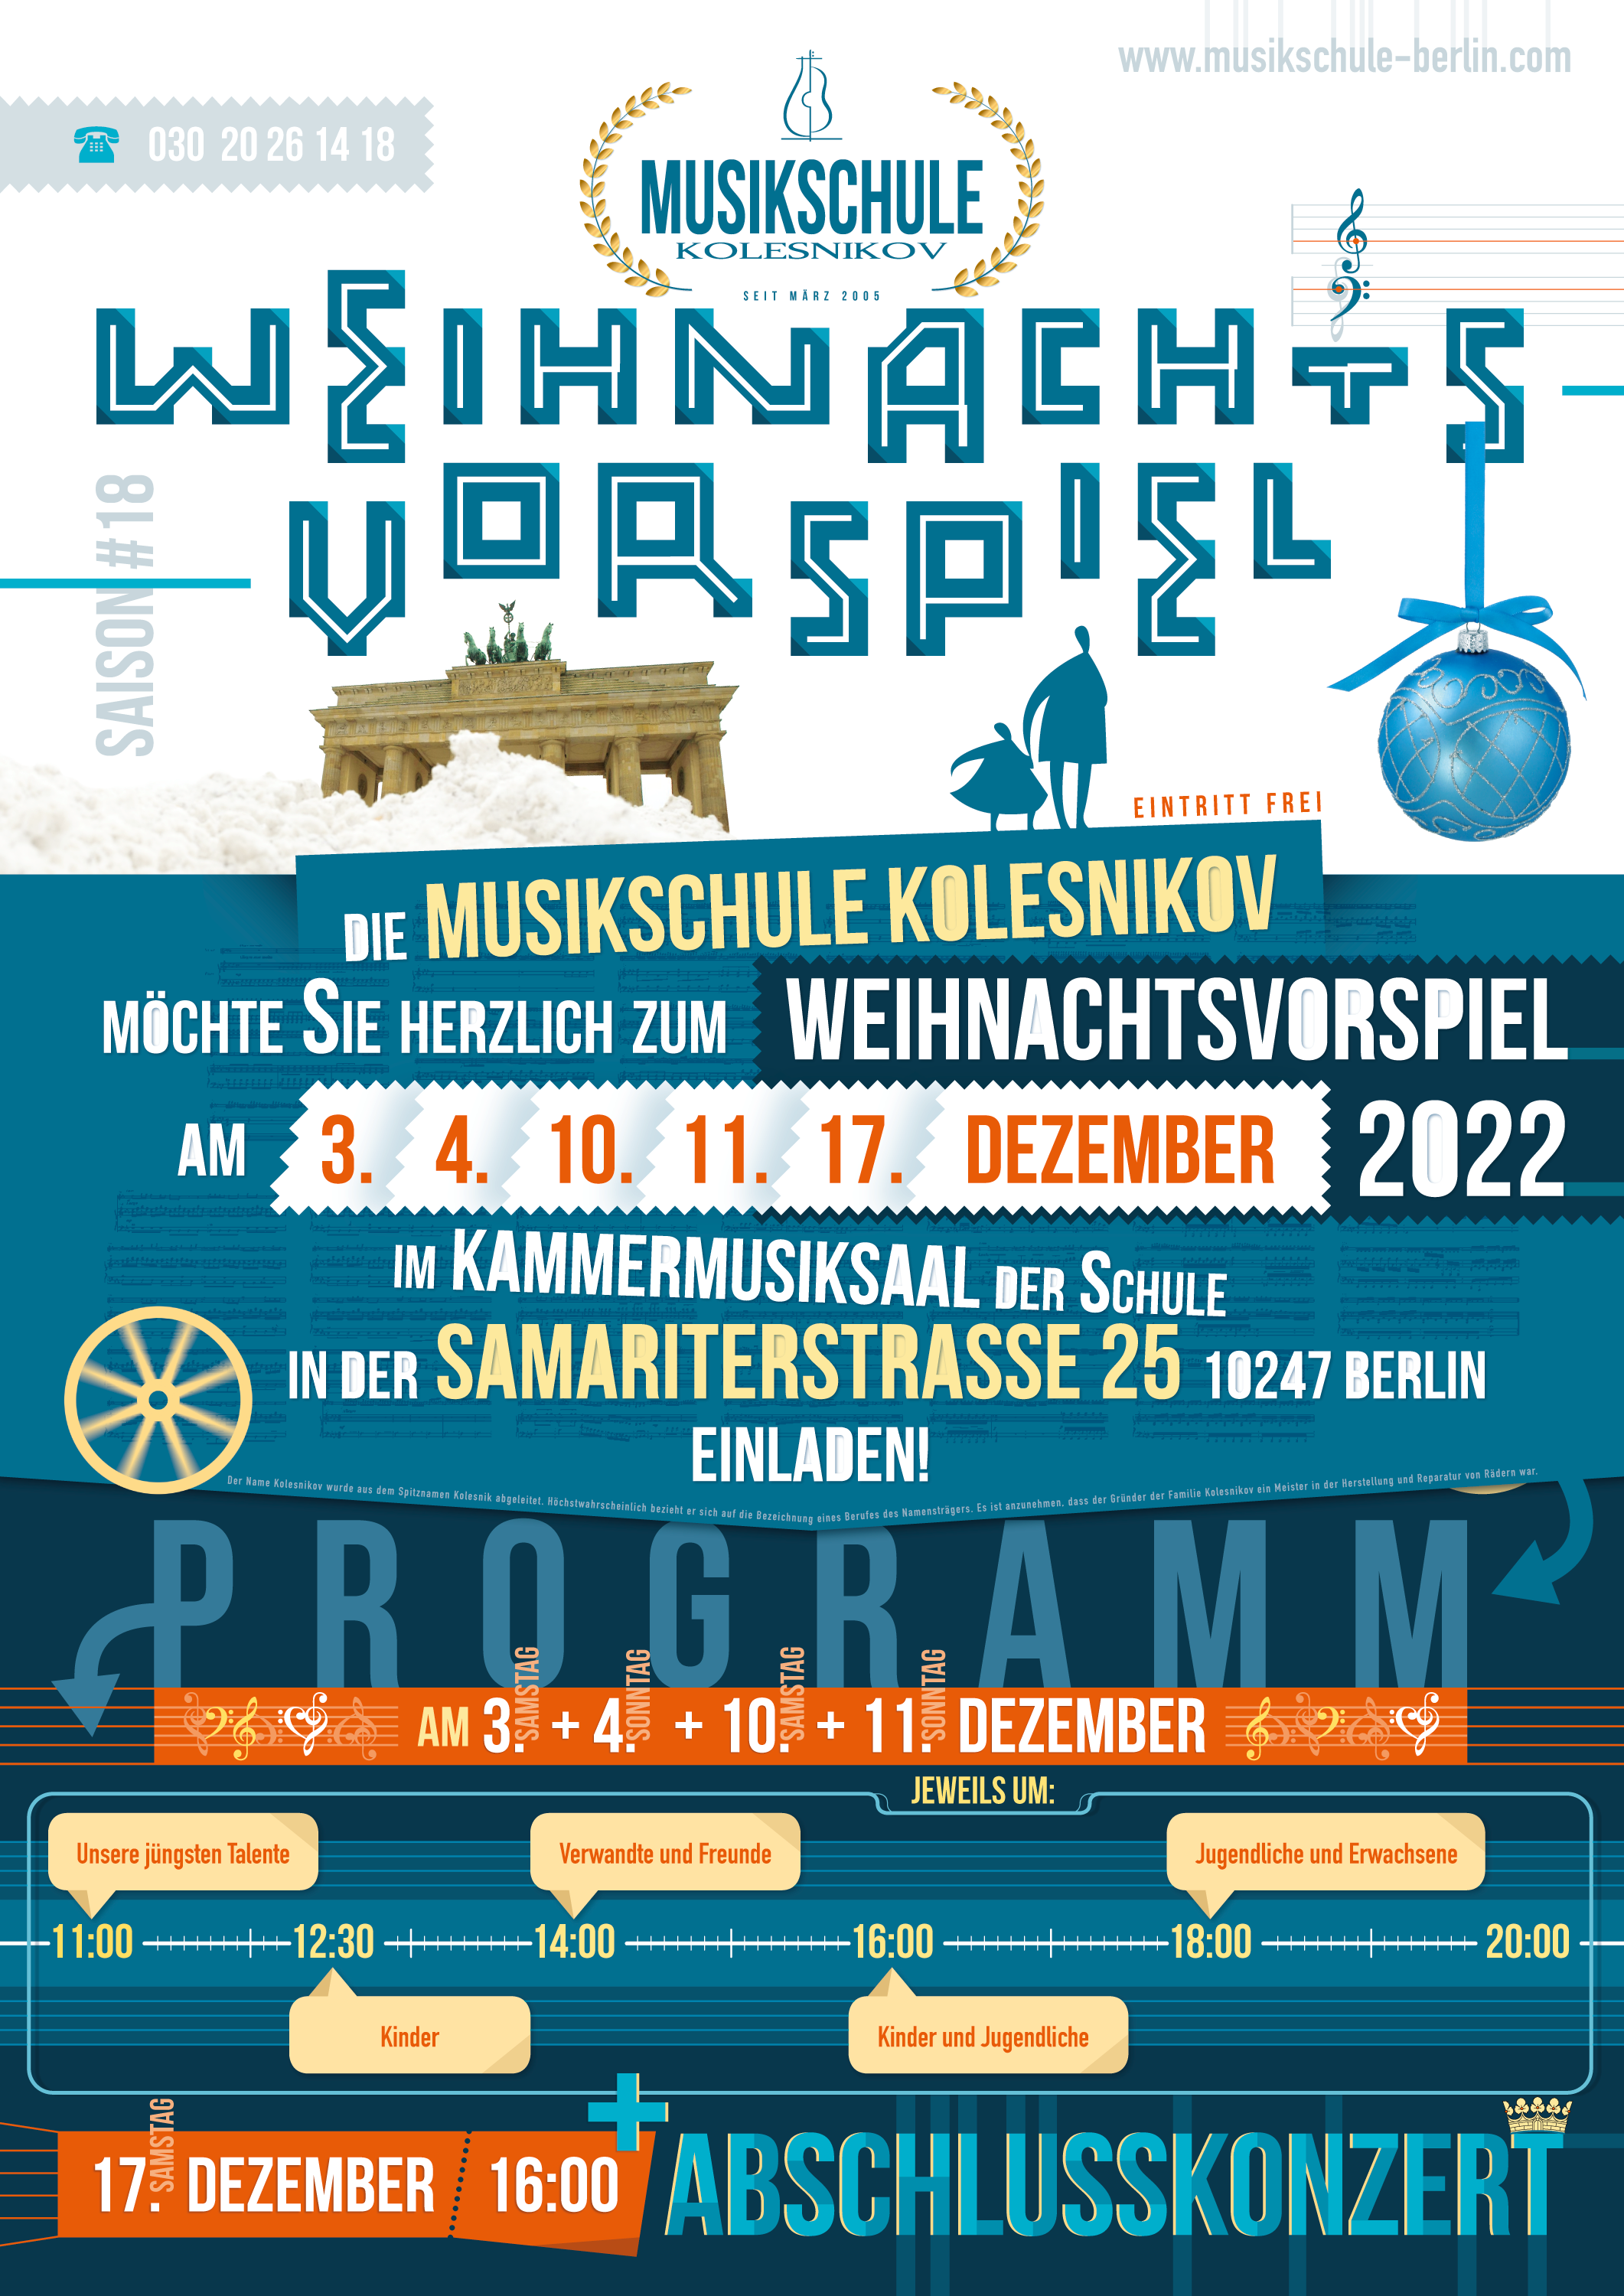 Musikschule Kolesnikov in Berlin • Weihnachtsvorspiel 2022